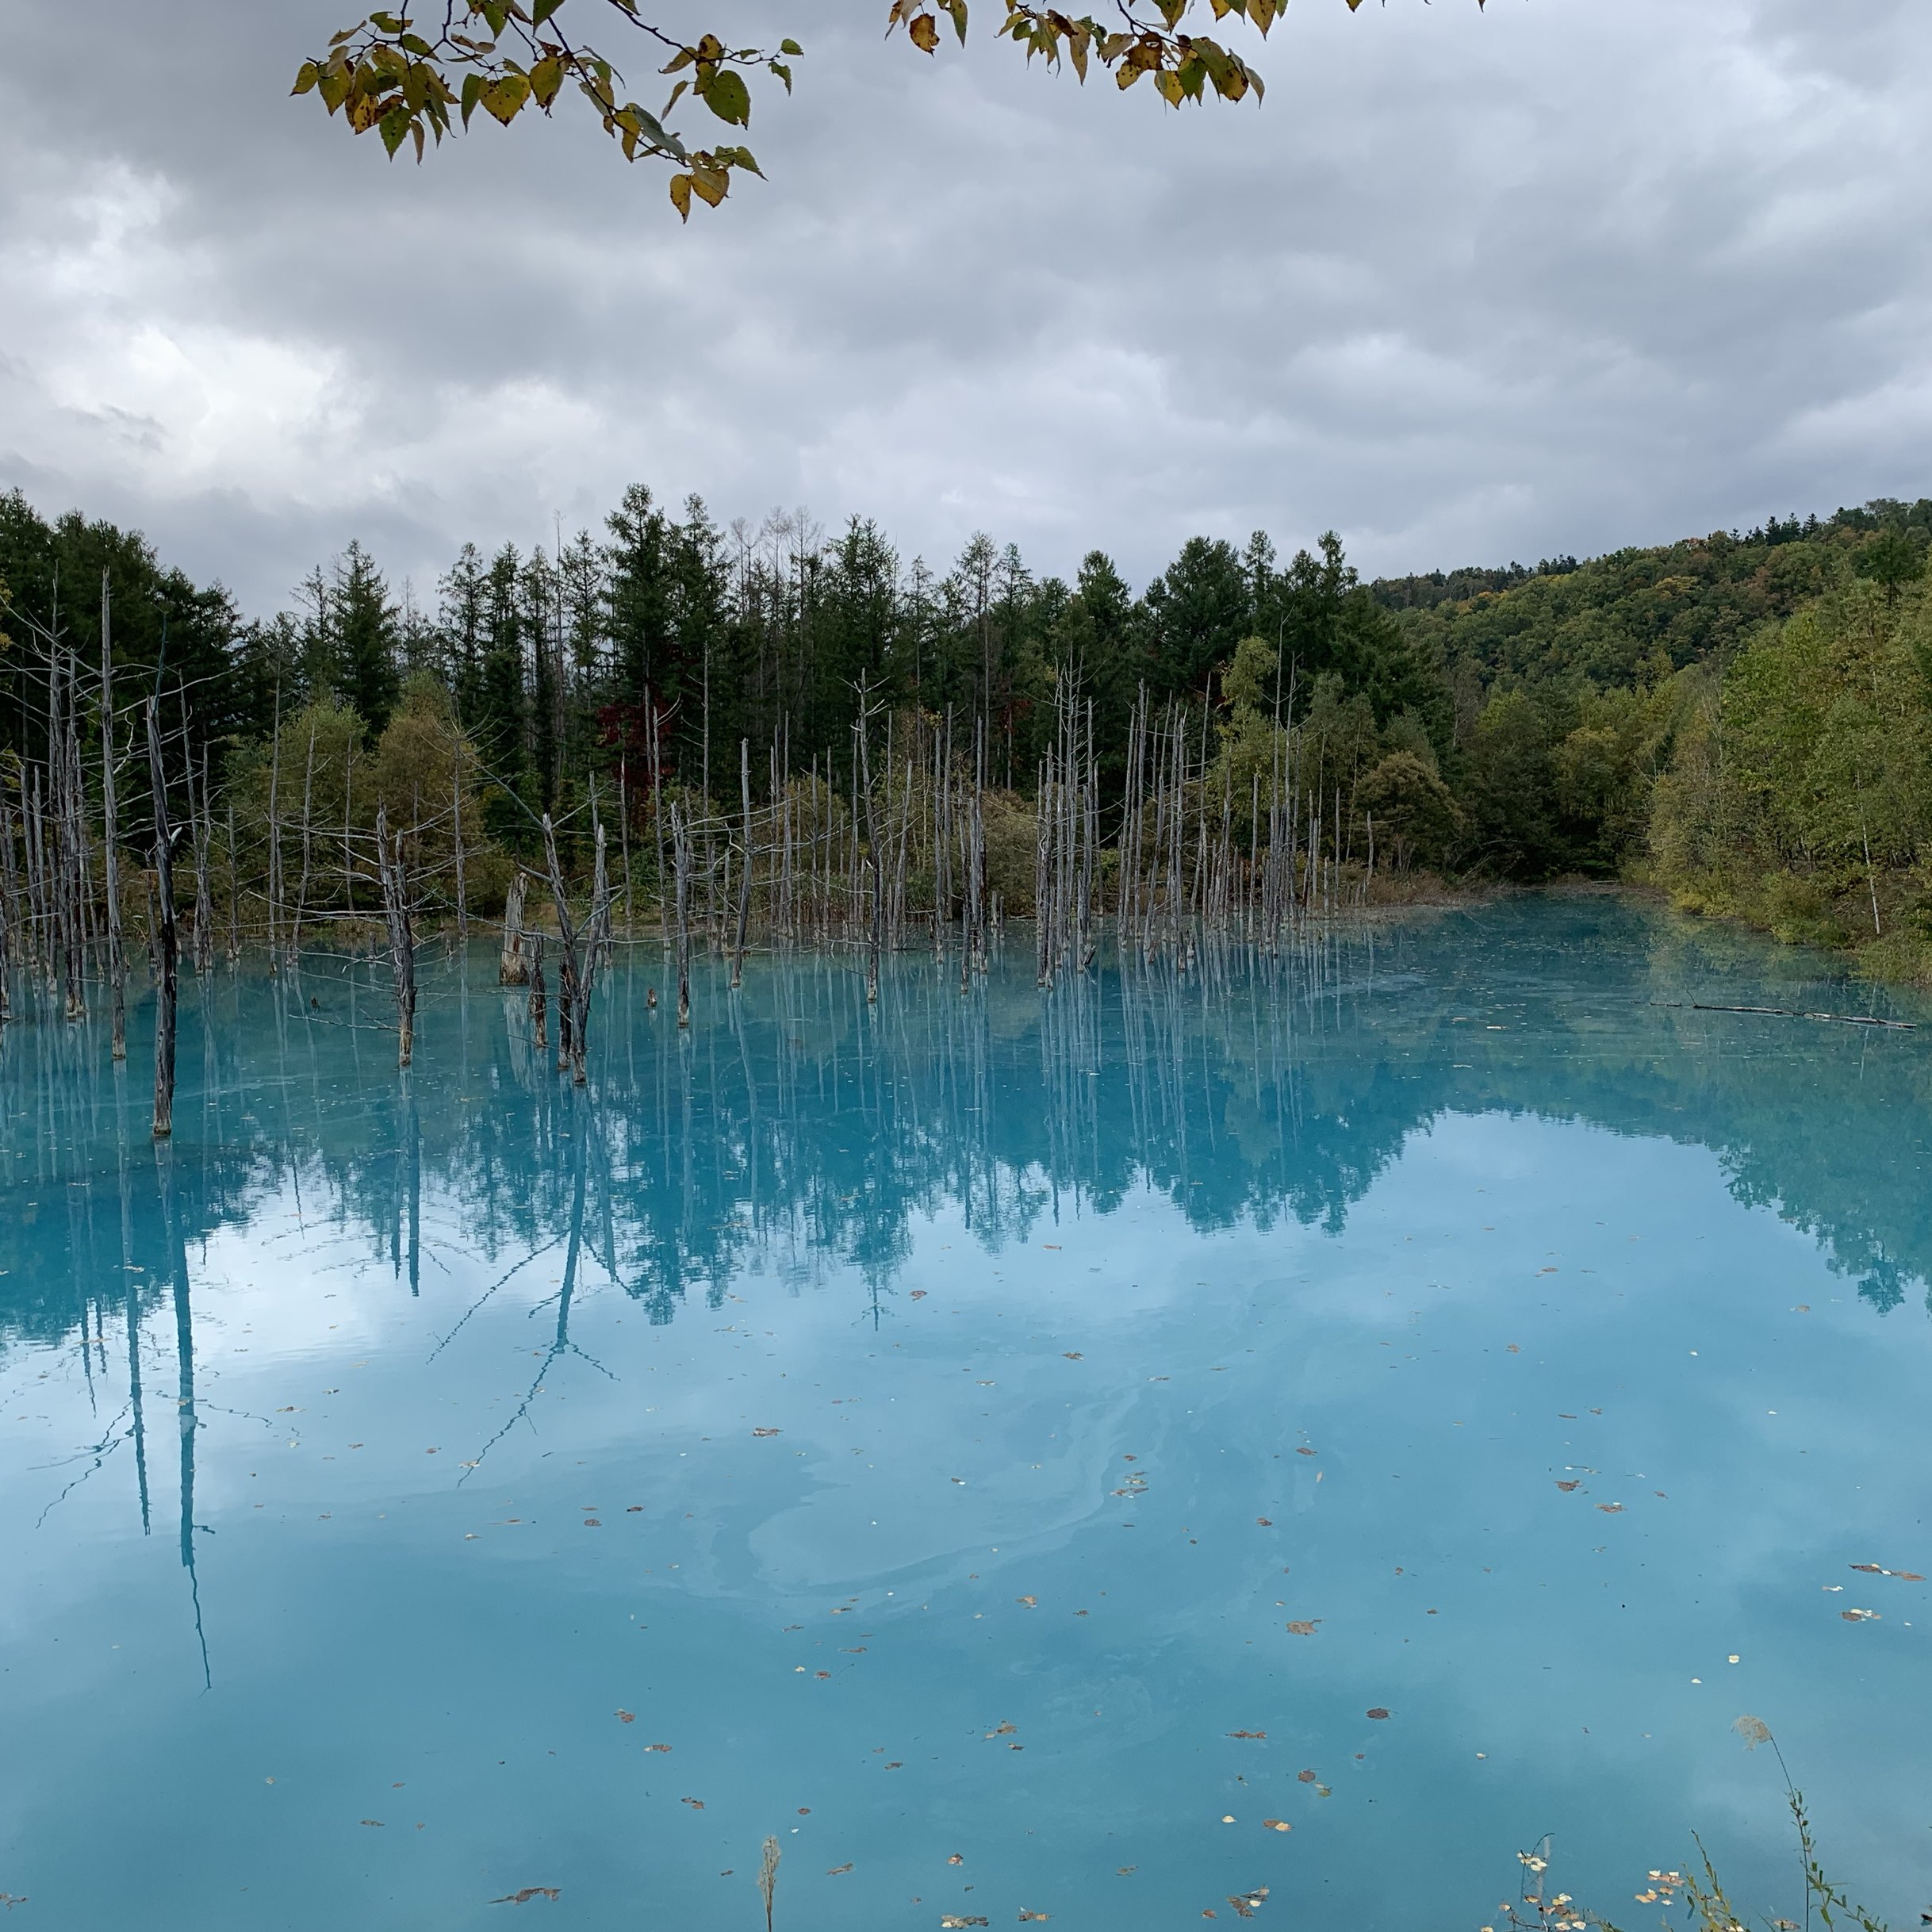 真的蓝色😙我想改变季节去很多次的蓝色池塘